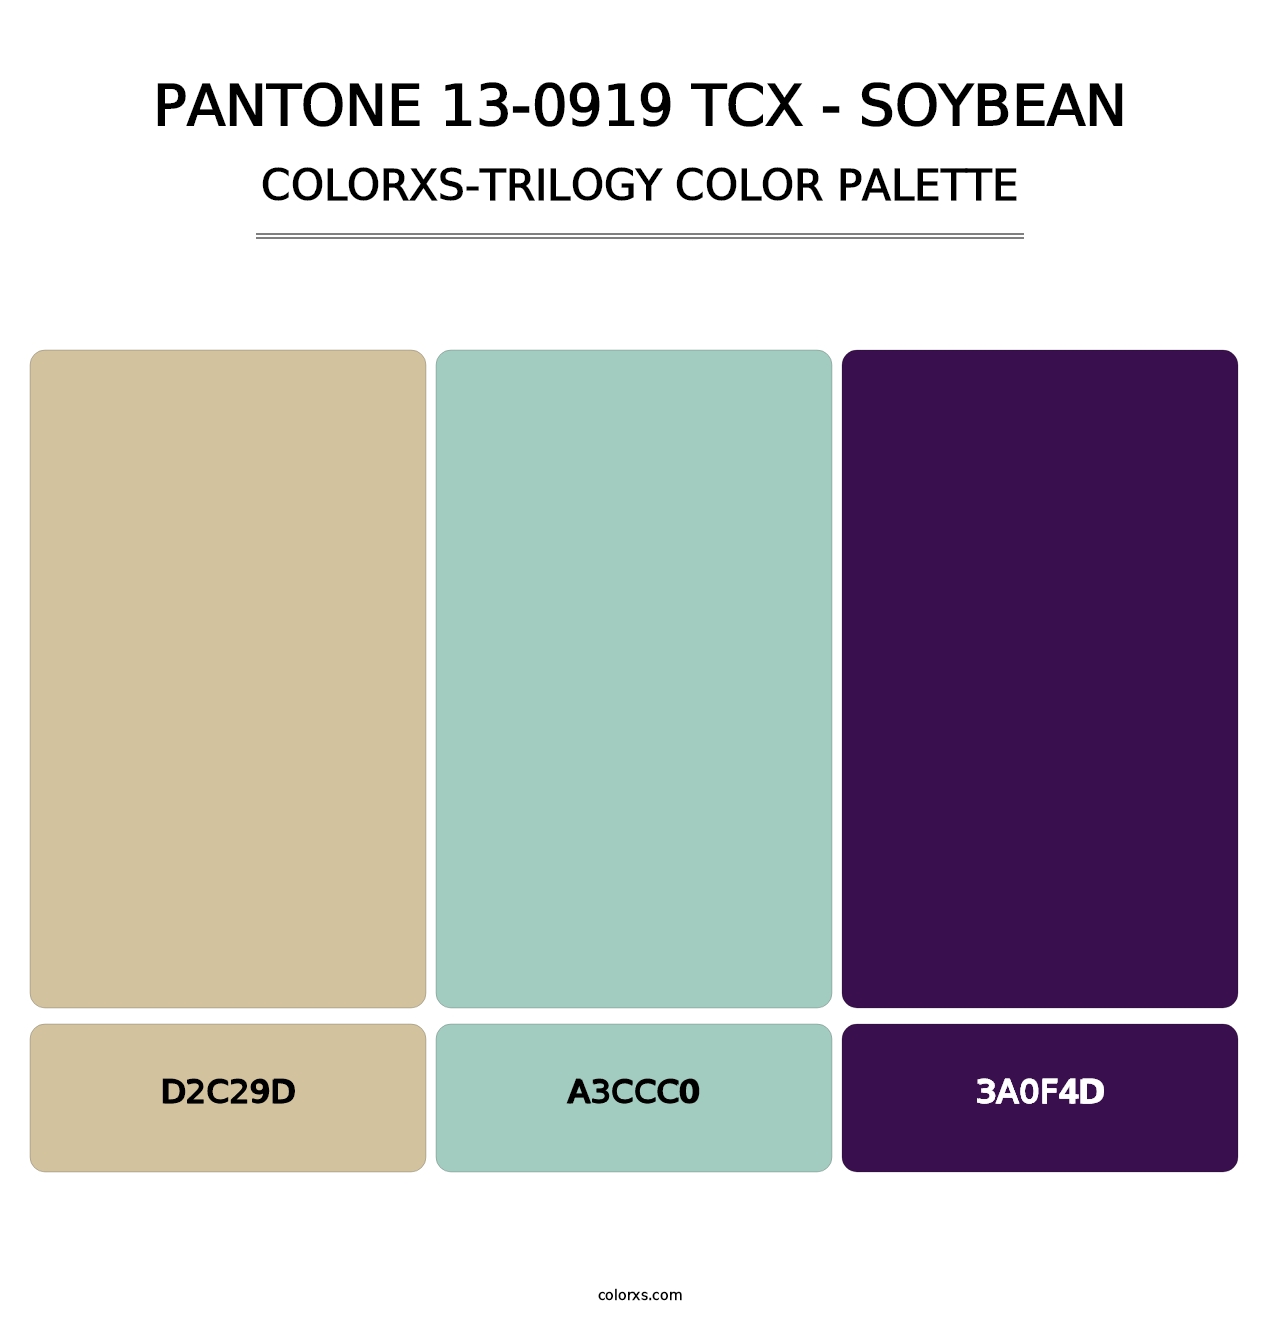 PANTONE 13-0919 TCX - Soybean - Colorxs Trilogy Palette